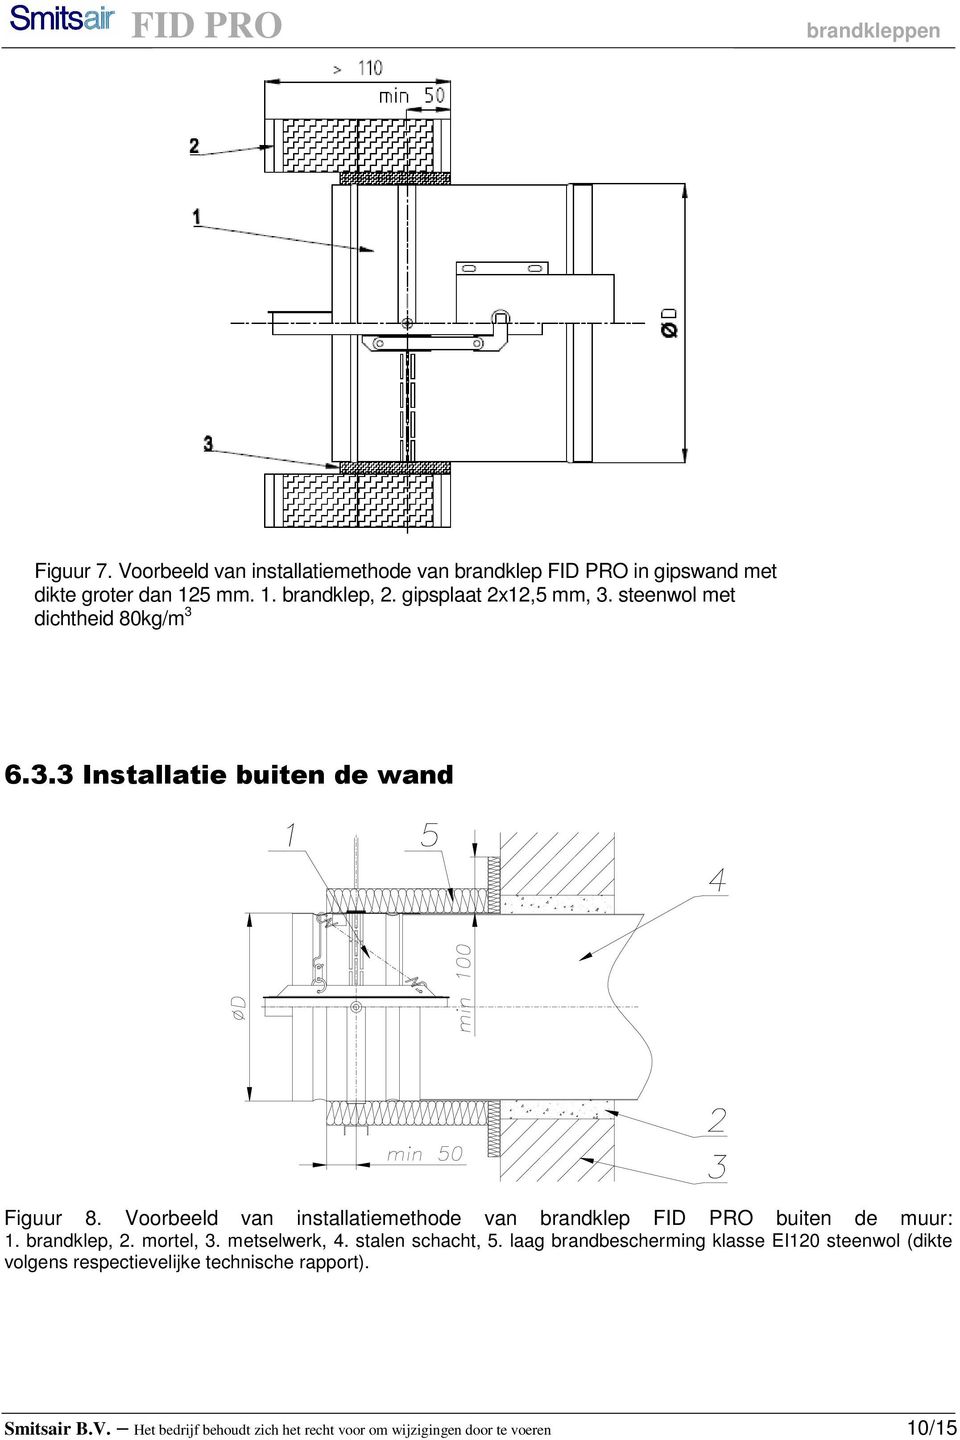 Voorbeeld van installatiemethode van brandklep FID PRO buiten de muur: 1. brandklep, 2. mortel, 3. metselwerk, 4. stalen schacht, 5.